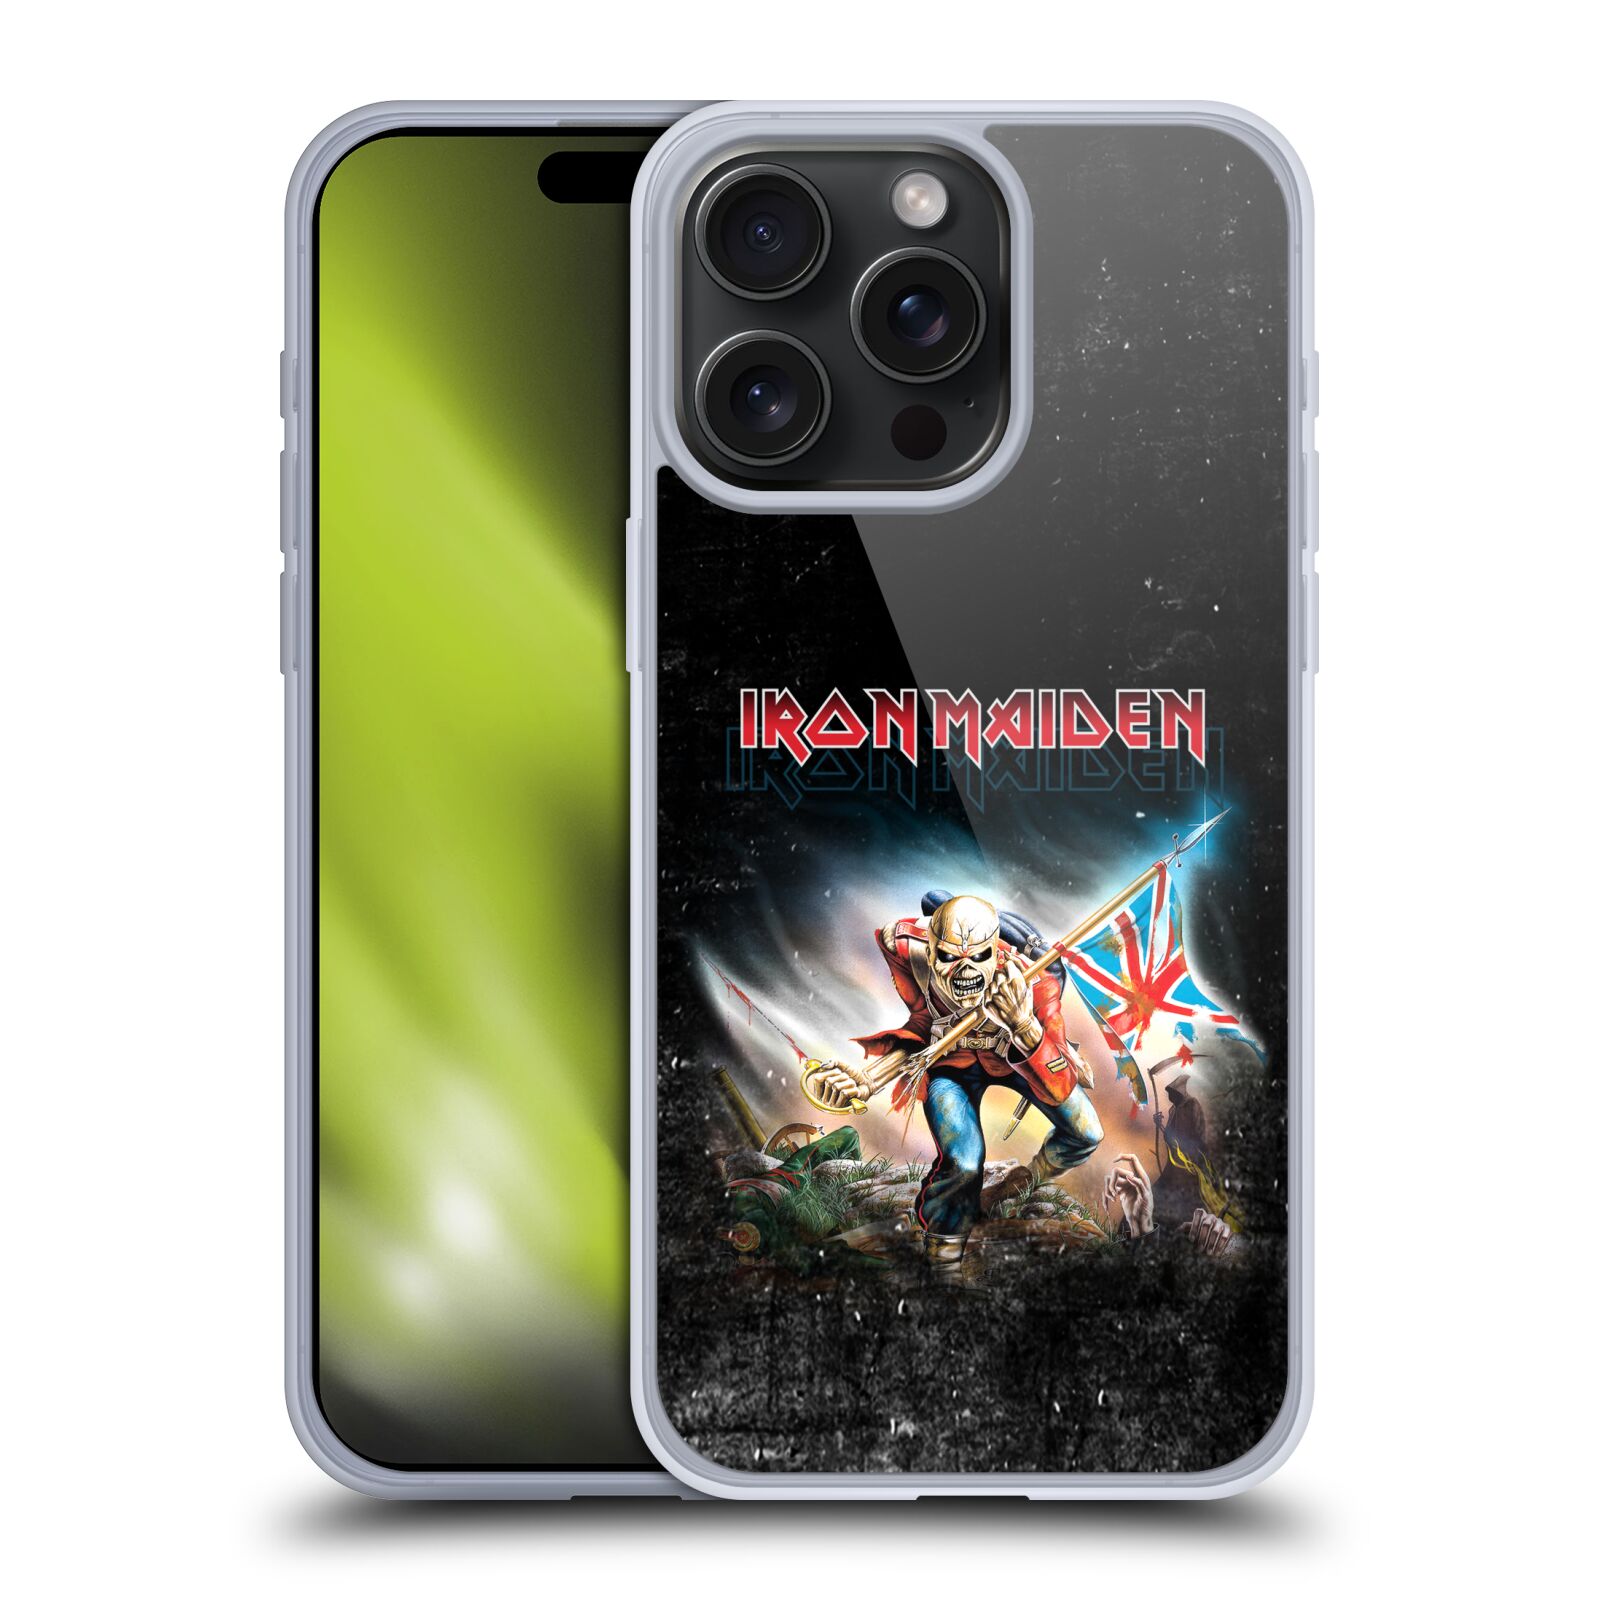 Silikonové lesklé pouzdro na mobil Apple iPhone 15 Pro Max - Head Case - Iron Maiden - Trooper 2016 (Silikonový lesklý kryt, obal, pouzdro na mobilní telefon Apple iPhone 15 Pro Max s motivem Iron Maiden - Trooper 2016)